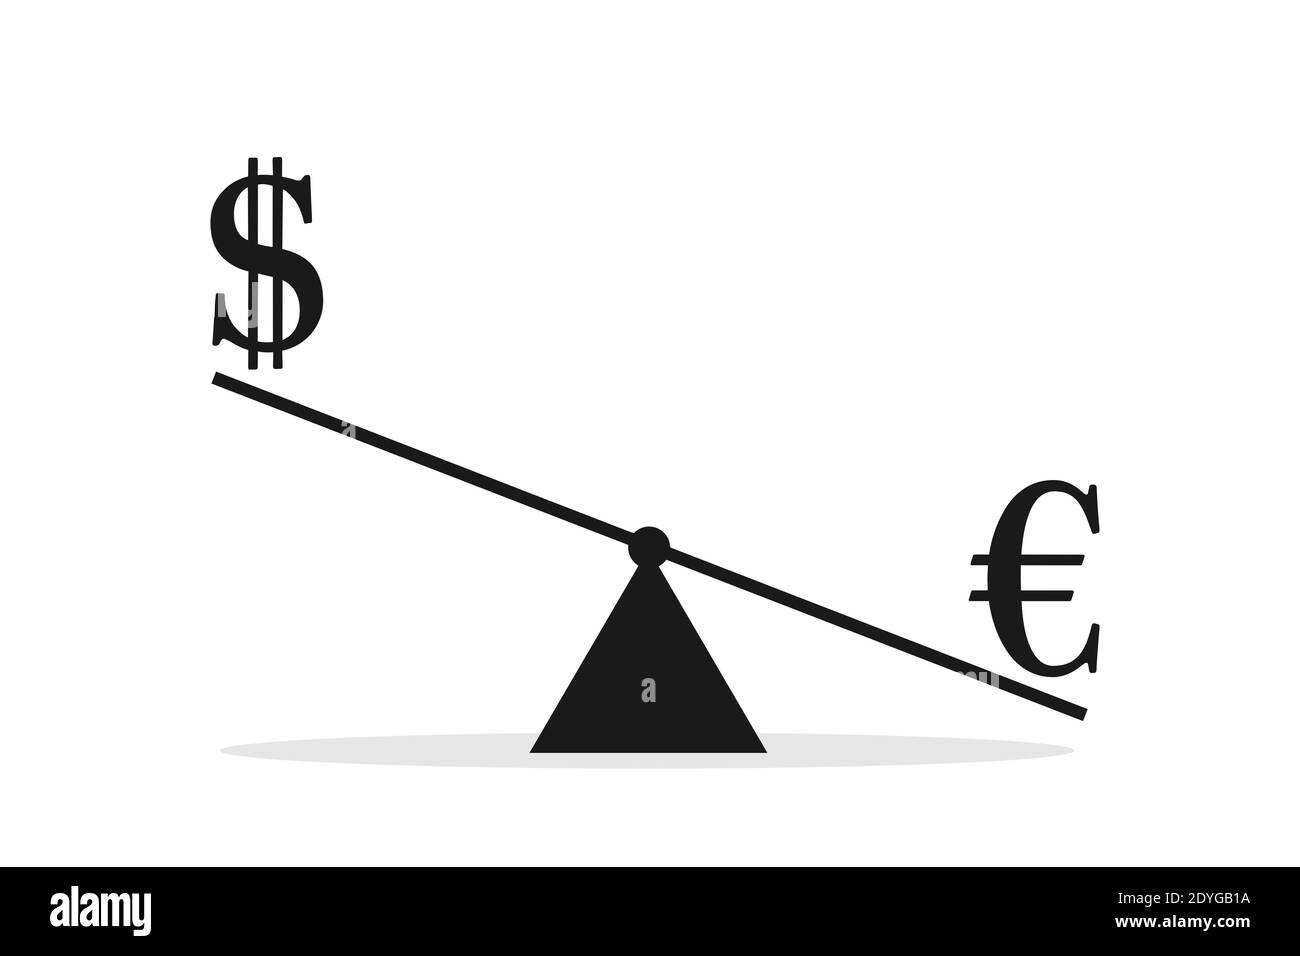 LE dollar AMÉRICAIN et l'euro sont comparés en fonction du poids et de  l'échelle. Comparaison de la valeur et de l'évaluation de la devise.  Illustration vectorielle isolée sur blanc Photo Stock -